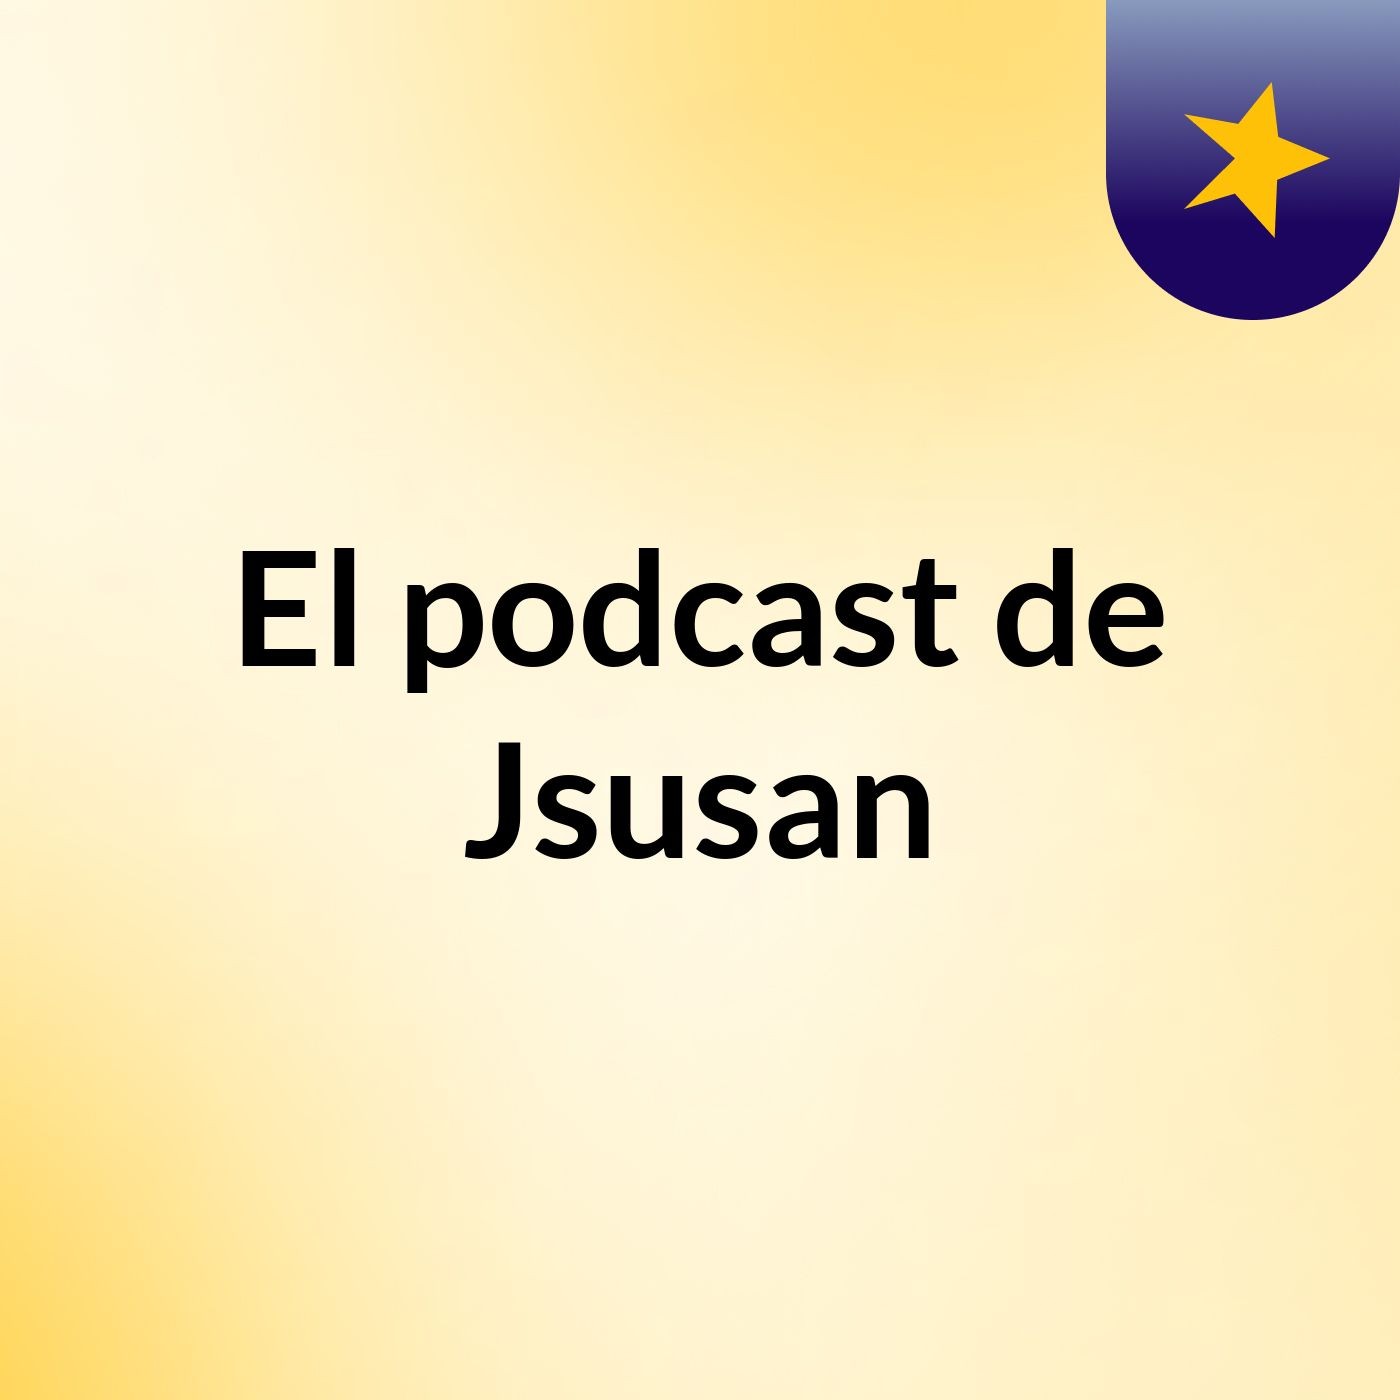 Episodio 4 - El podcast de Javier